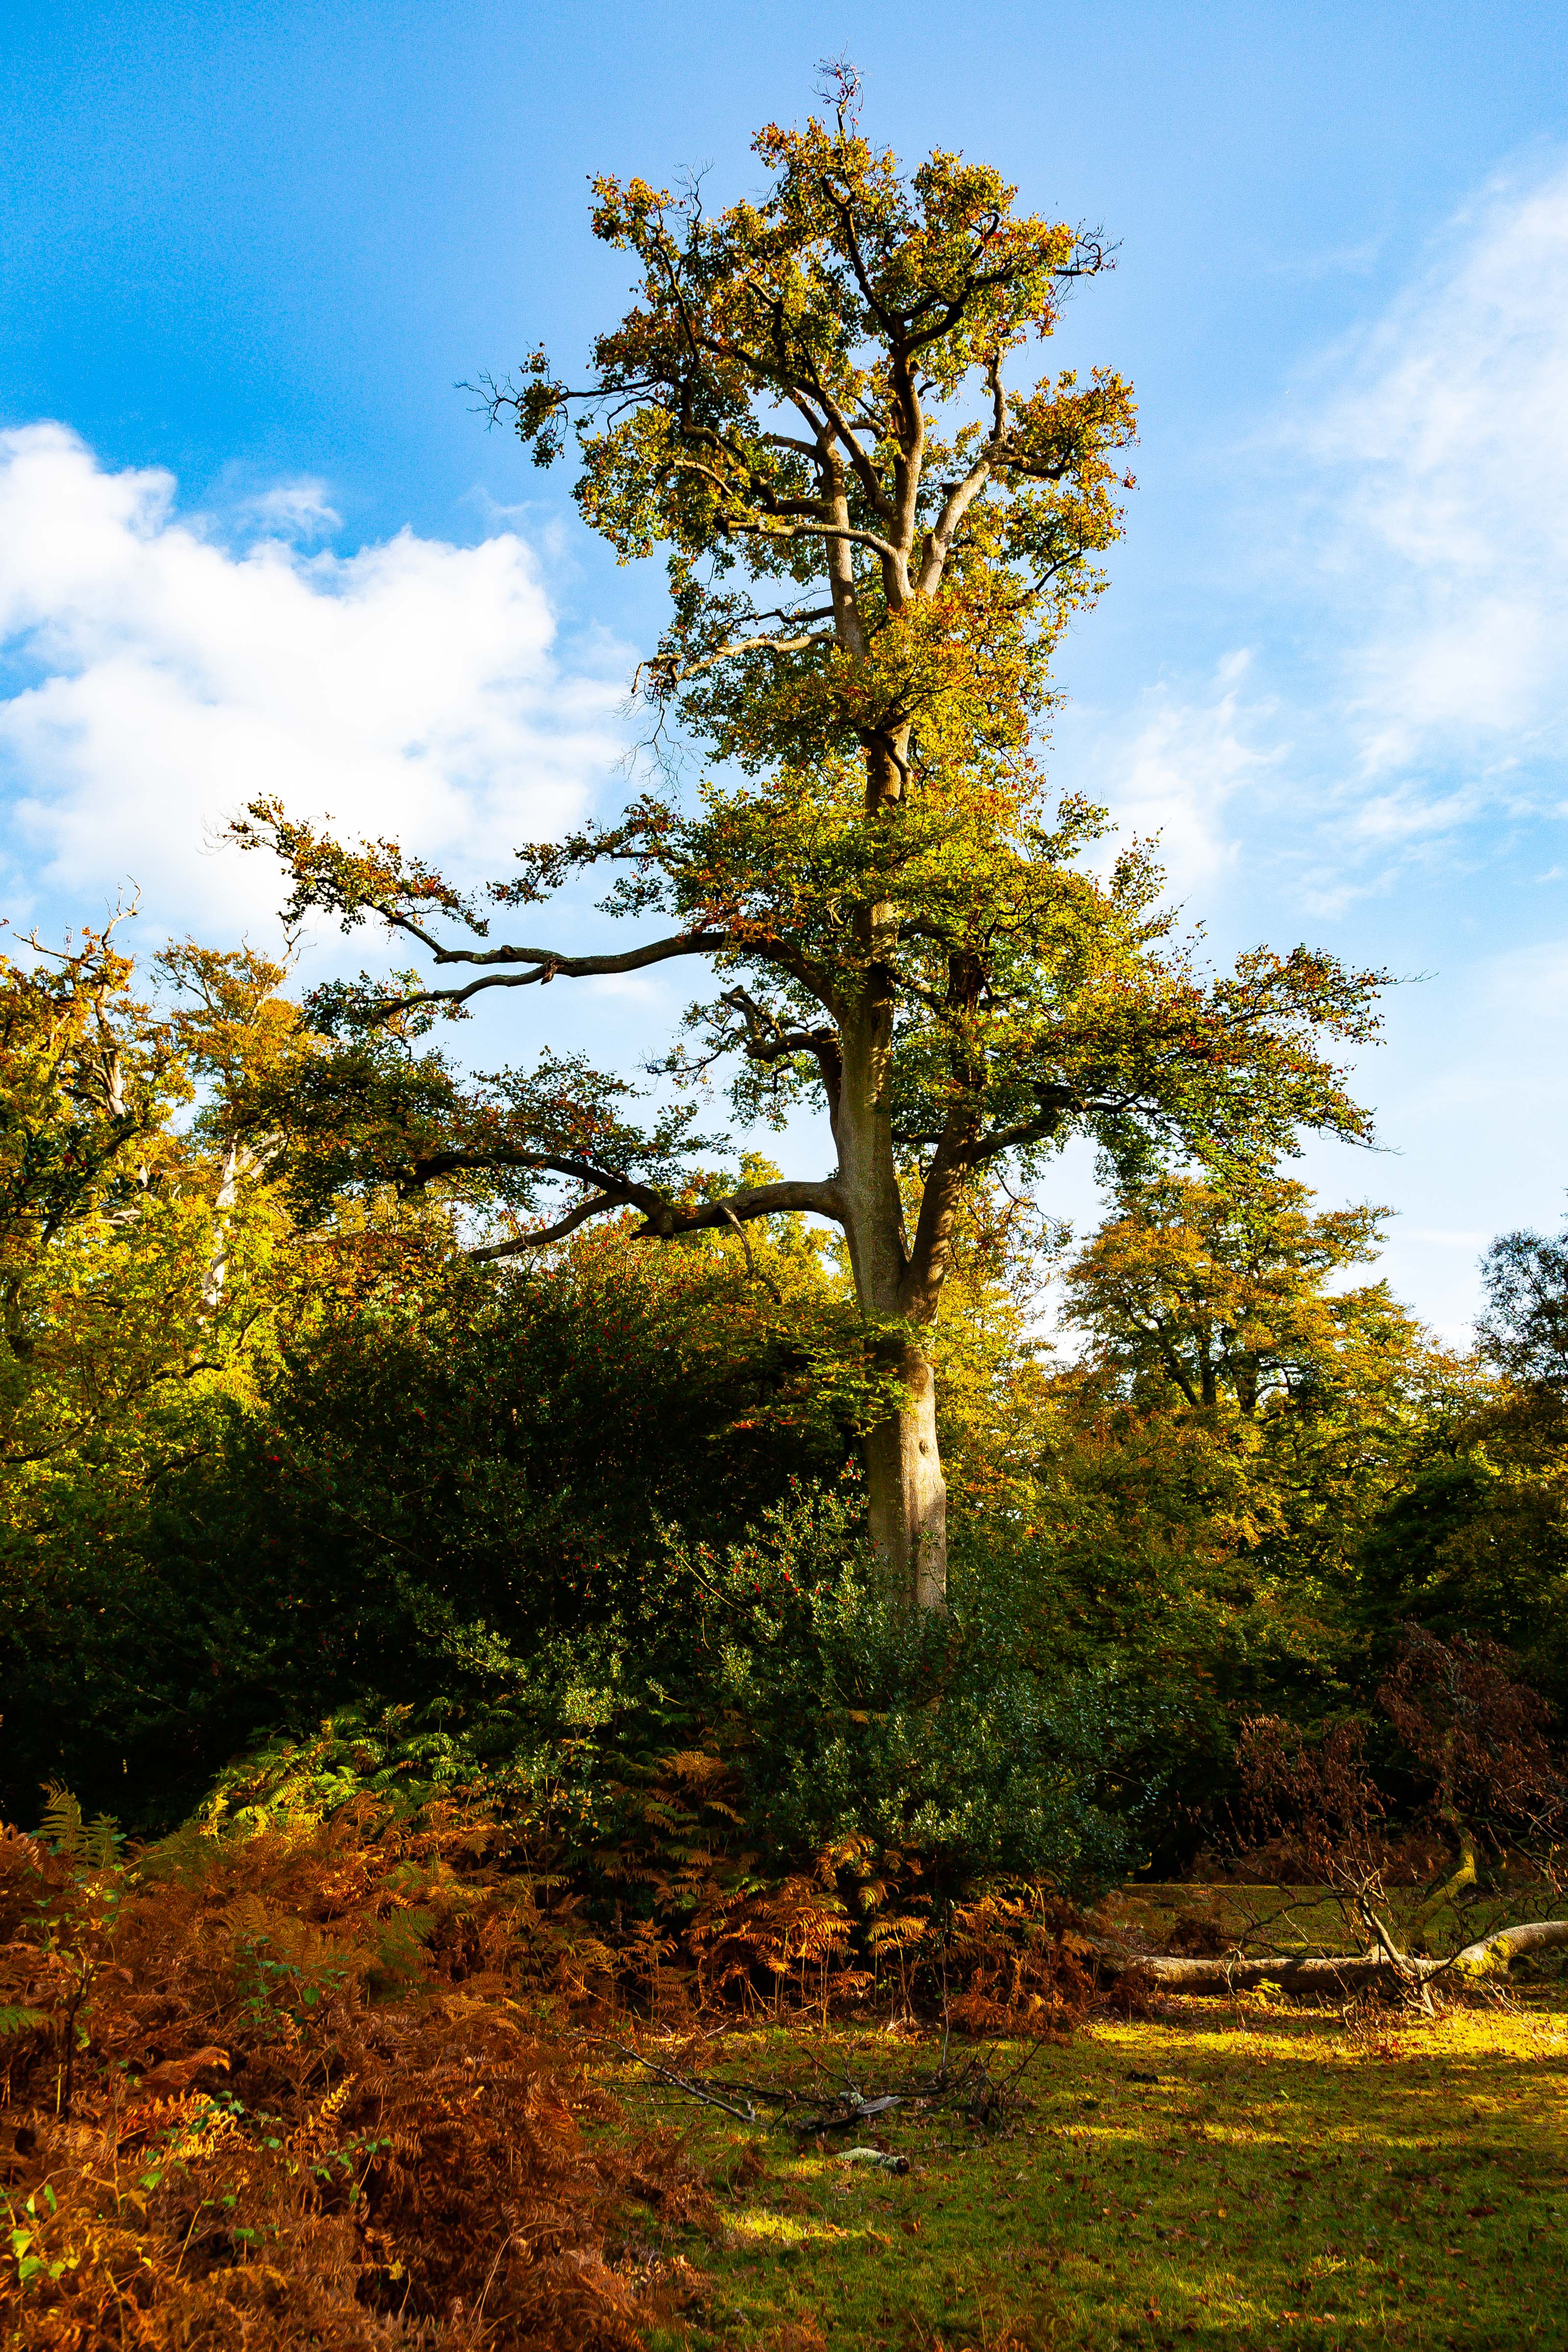 UK, Hampshire Prov, Tree, 2009, IMG 4259